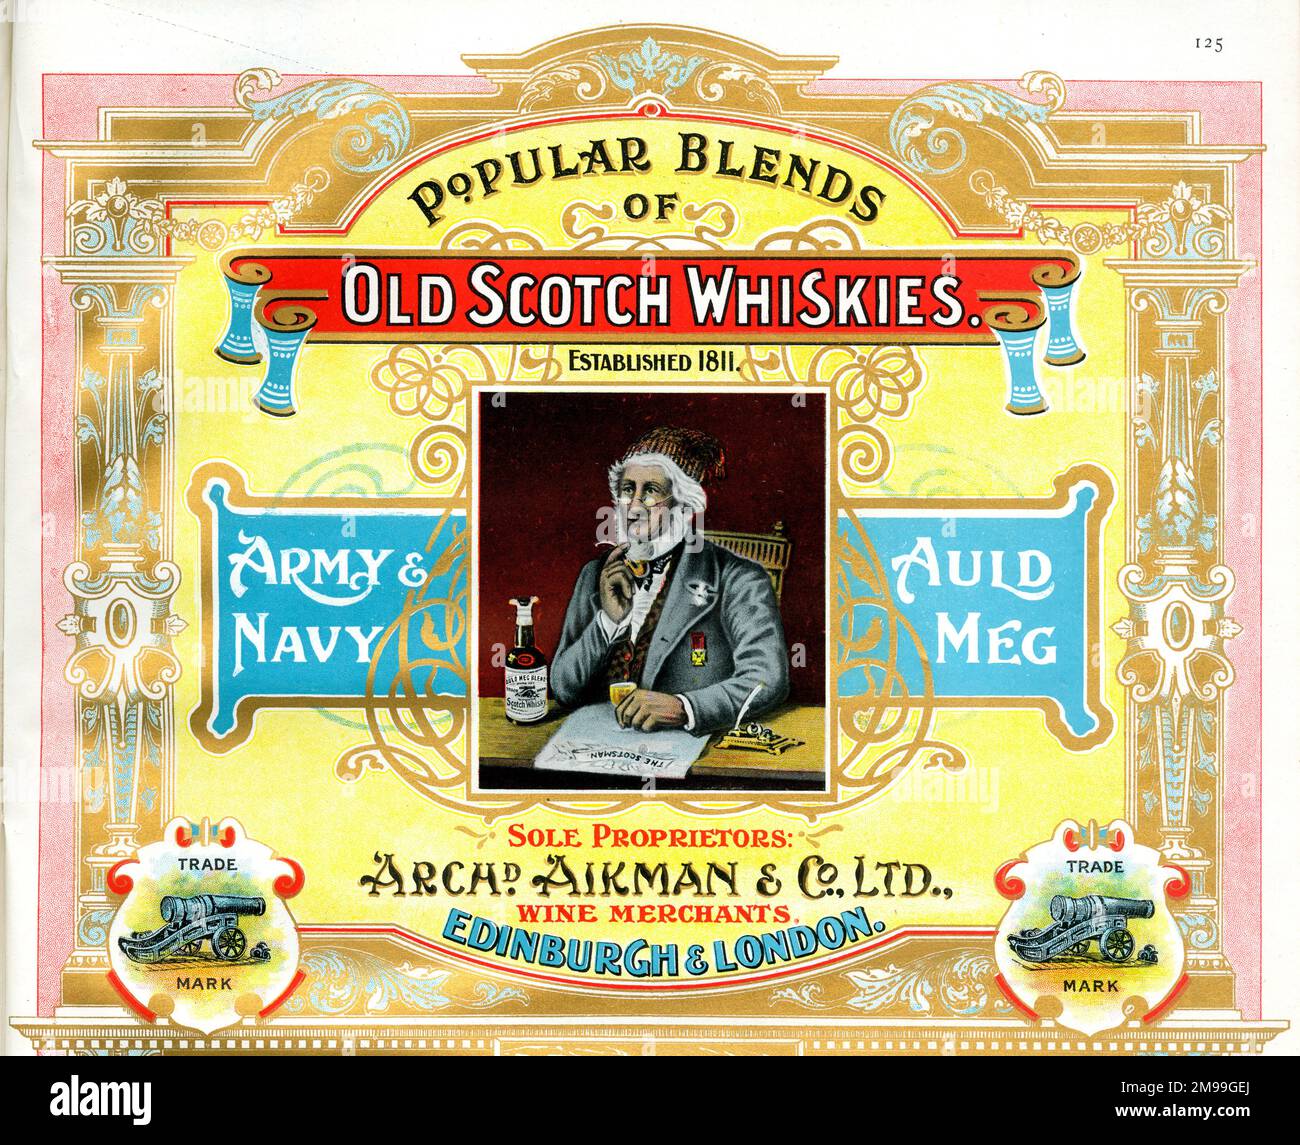 Werbung für Old Scotch Whiskies, Archibald Aikman & Co Ltd Wine Merchants, Edinburgh und London. Stockfoto